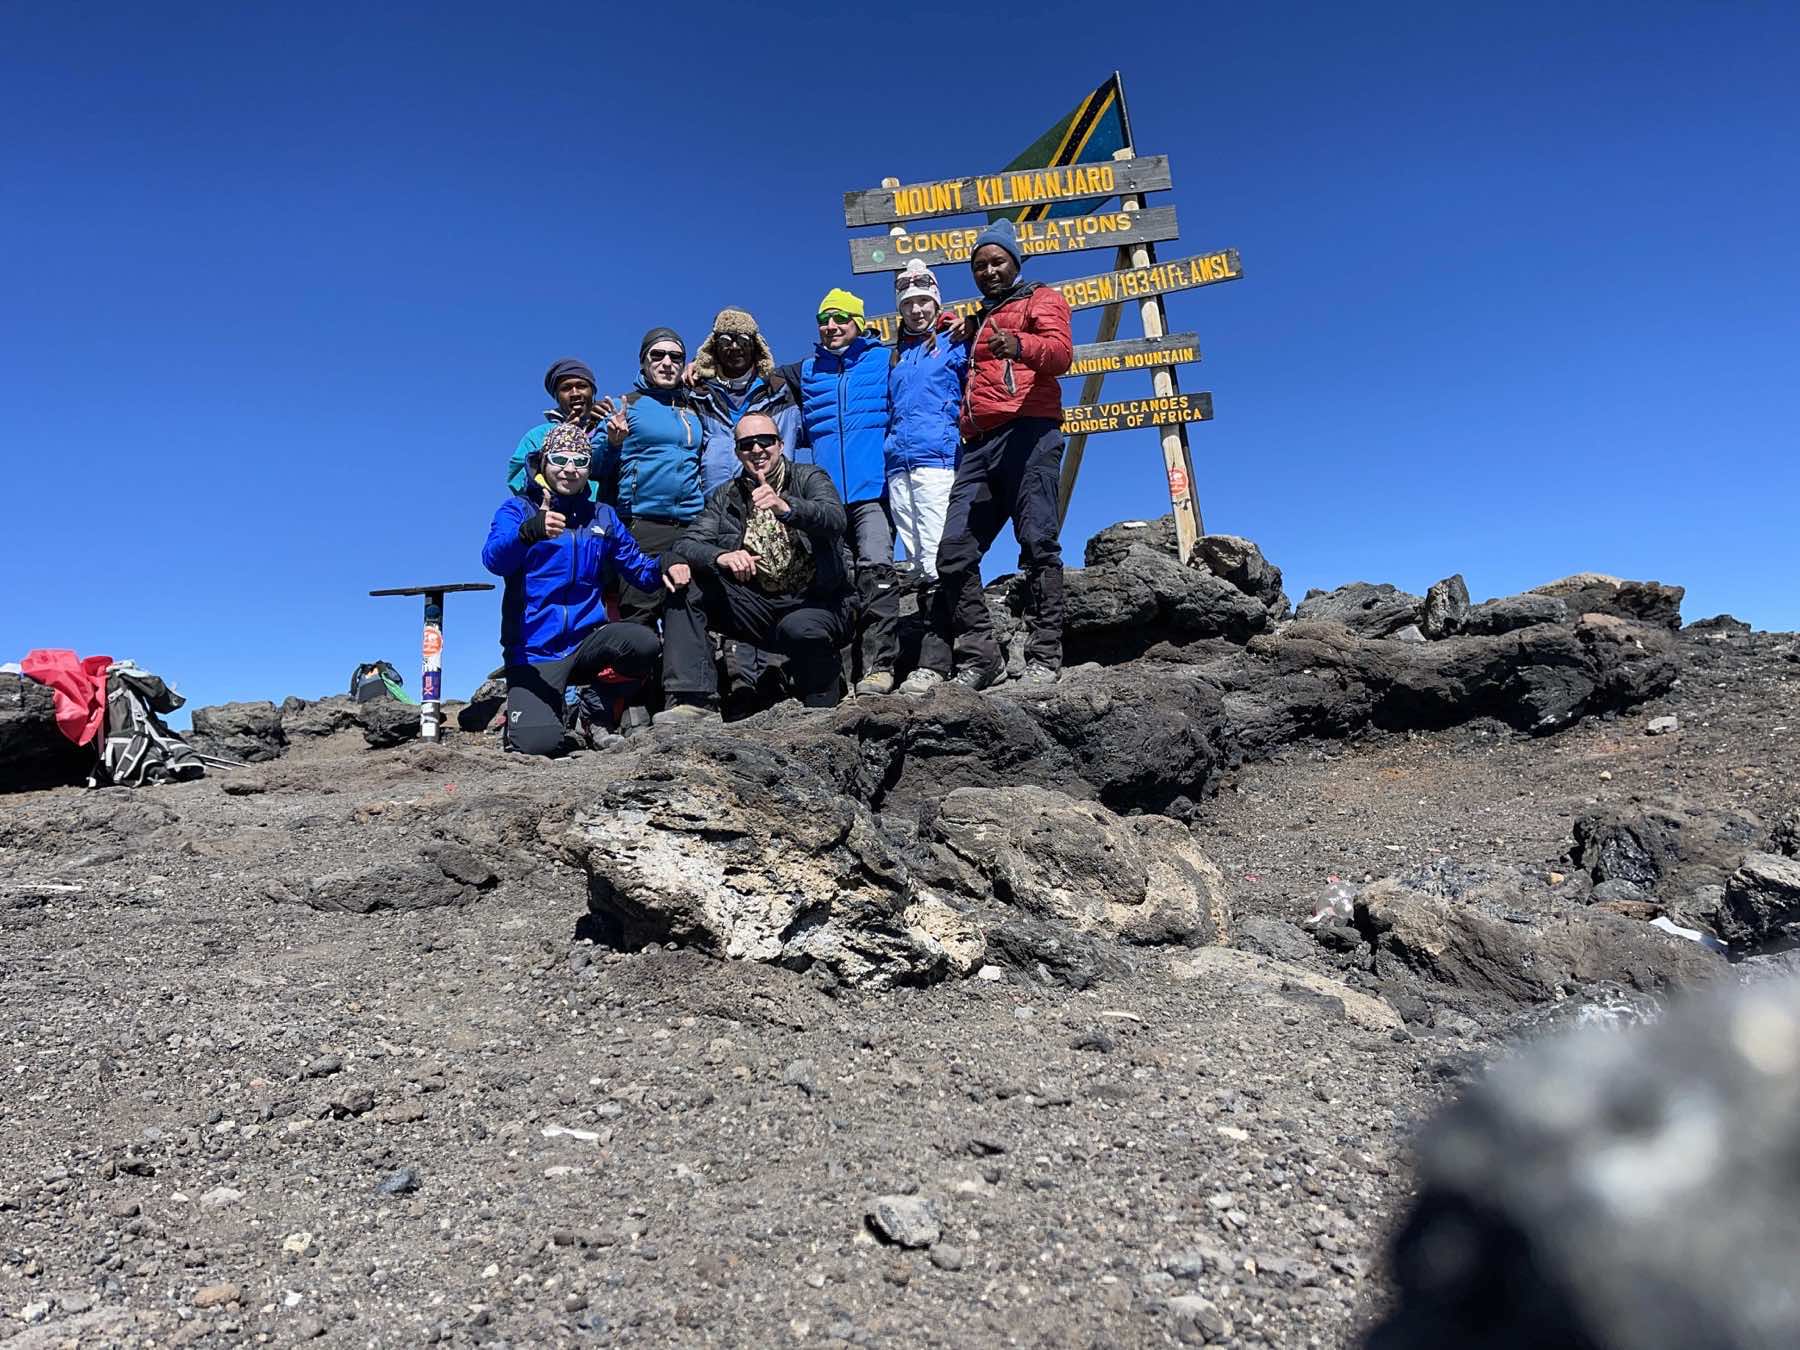 Kilimanjaro. Machame